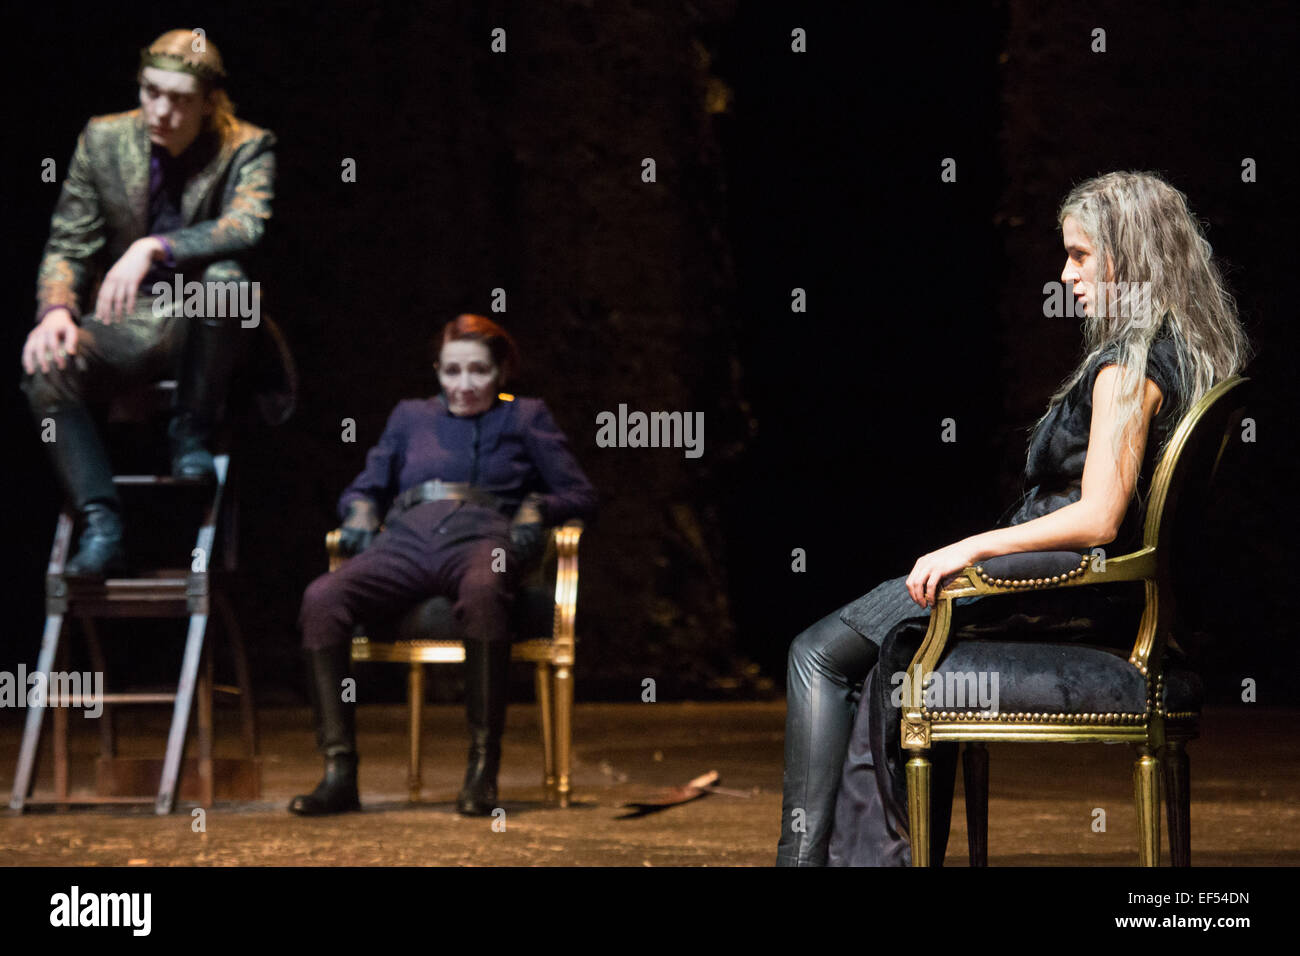 Basé sur Richard Wagner's 'Ring', le Hamburg Thalia-Theater ont organisé la deuxième partie de l'EPOS à propos du Nibelungen, Siegfried "" et "le crépuscule des dieux' le 17 janvier 2015. Acteurs principaux : Philipp Hochmair (Siegfried), Marina Galic (Brunhilde), et Rafae Banque D'Images